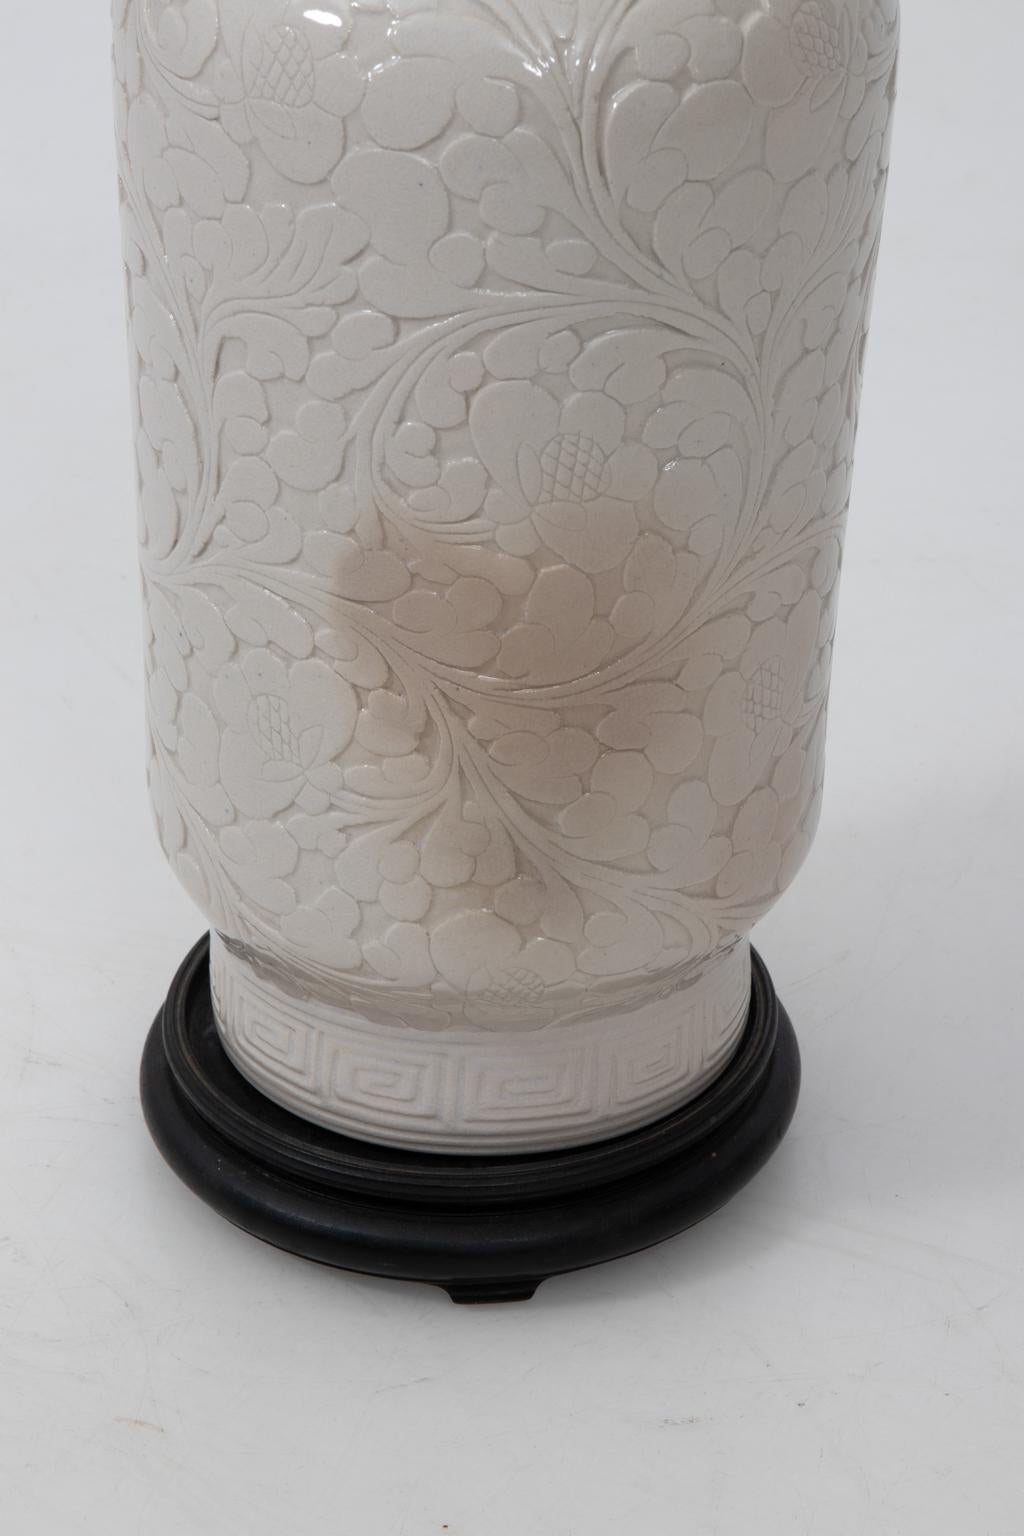 Chinese White Pottery Vase 5